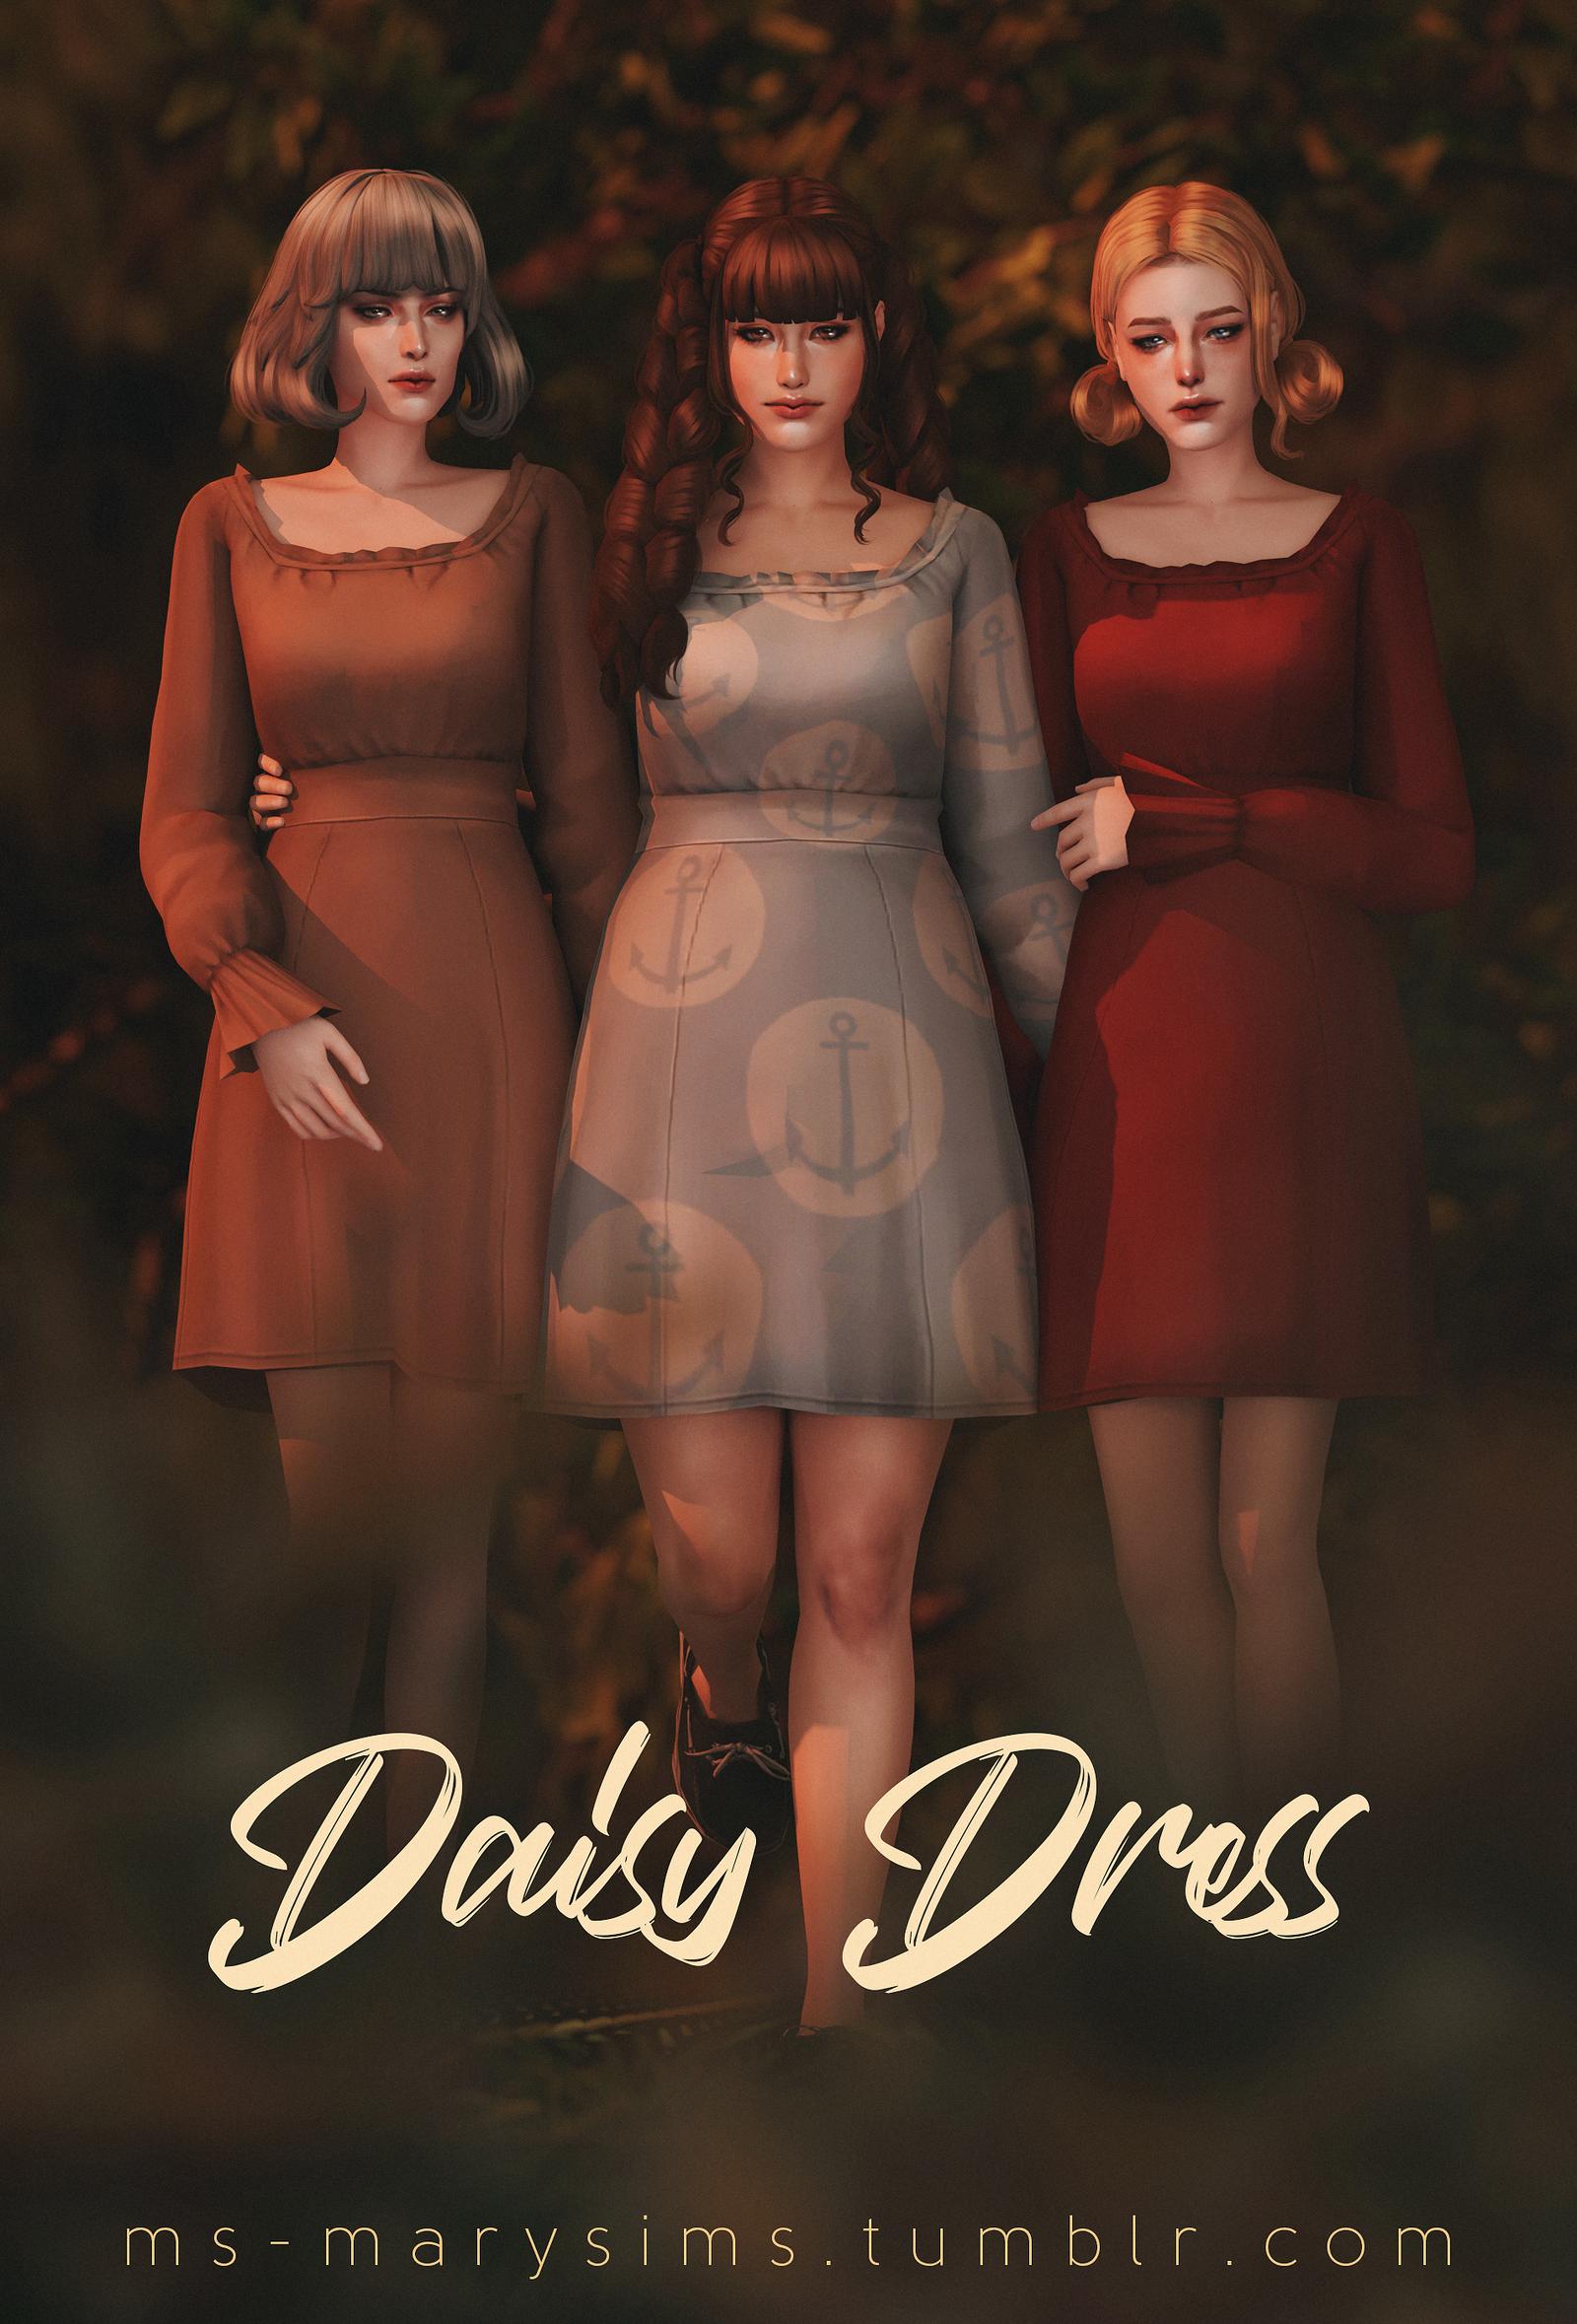 maxis match daisy dress ms mary sims